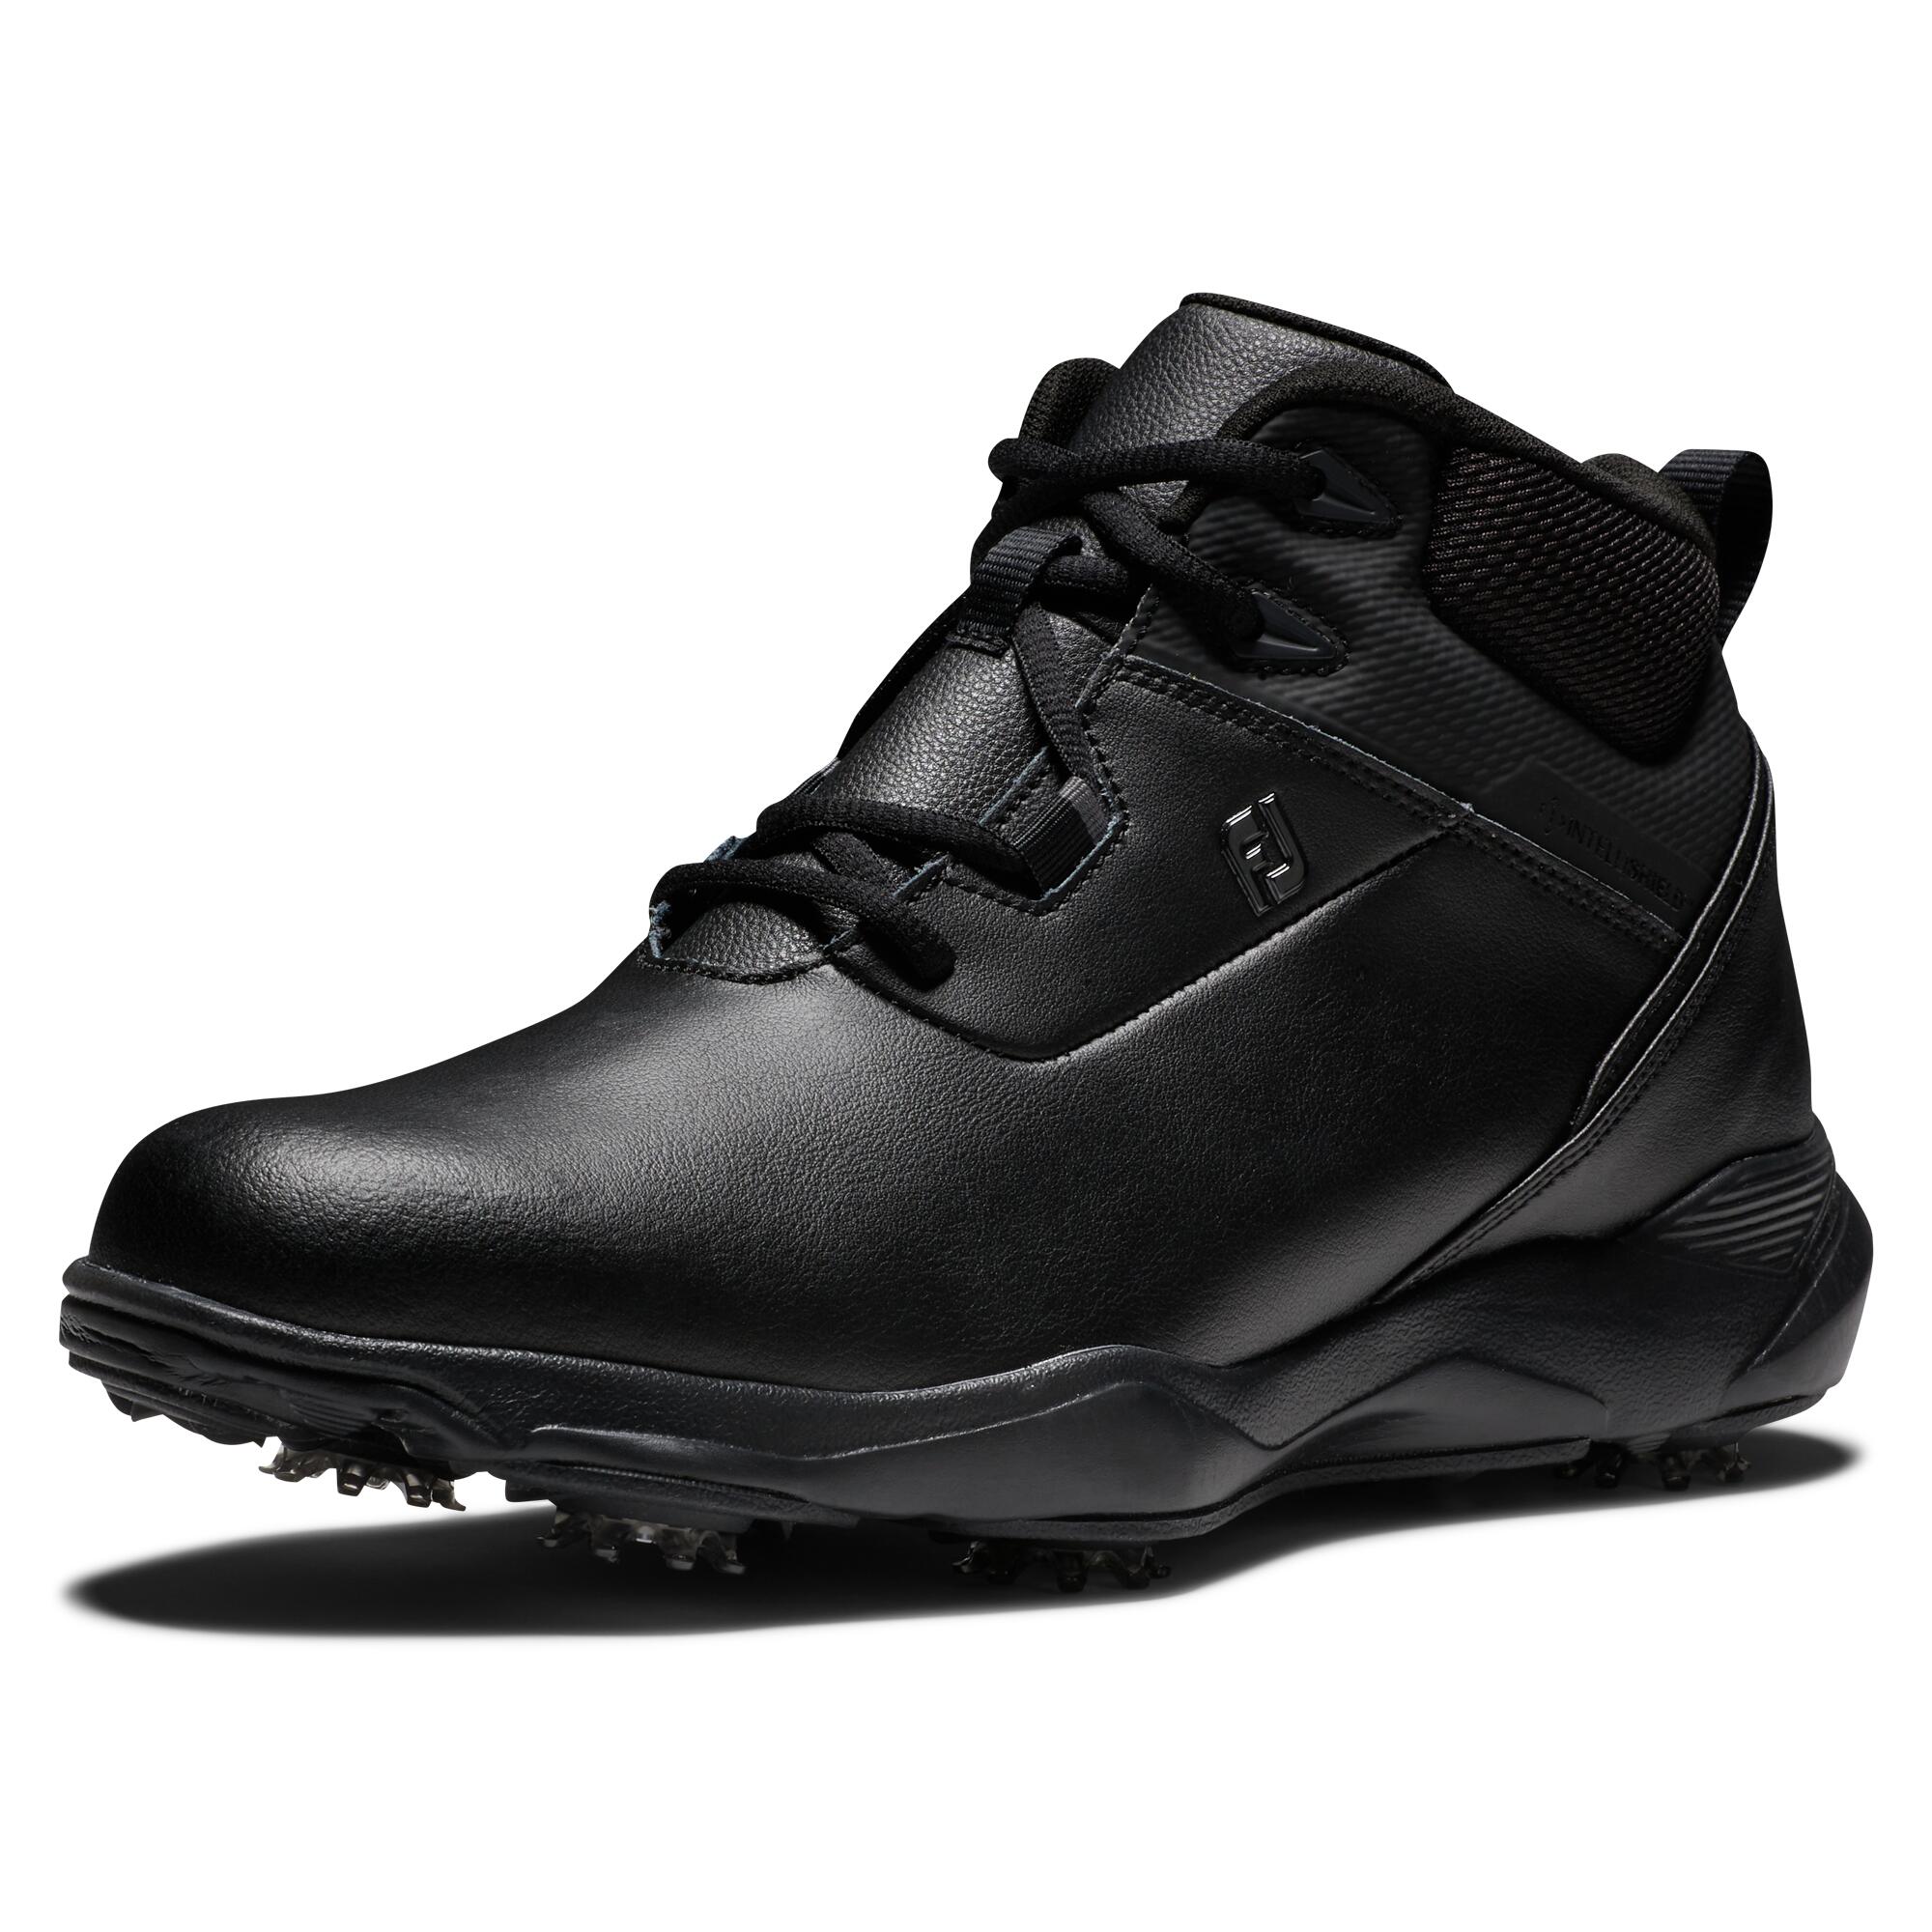 Men's golf shoes Footjoy - Stormwalker booties black 6/6